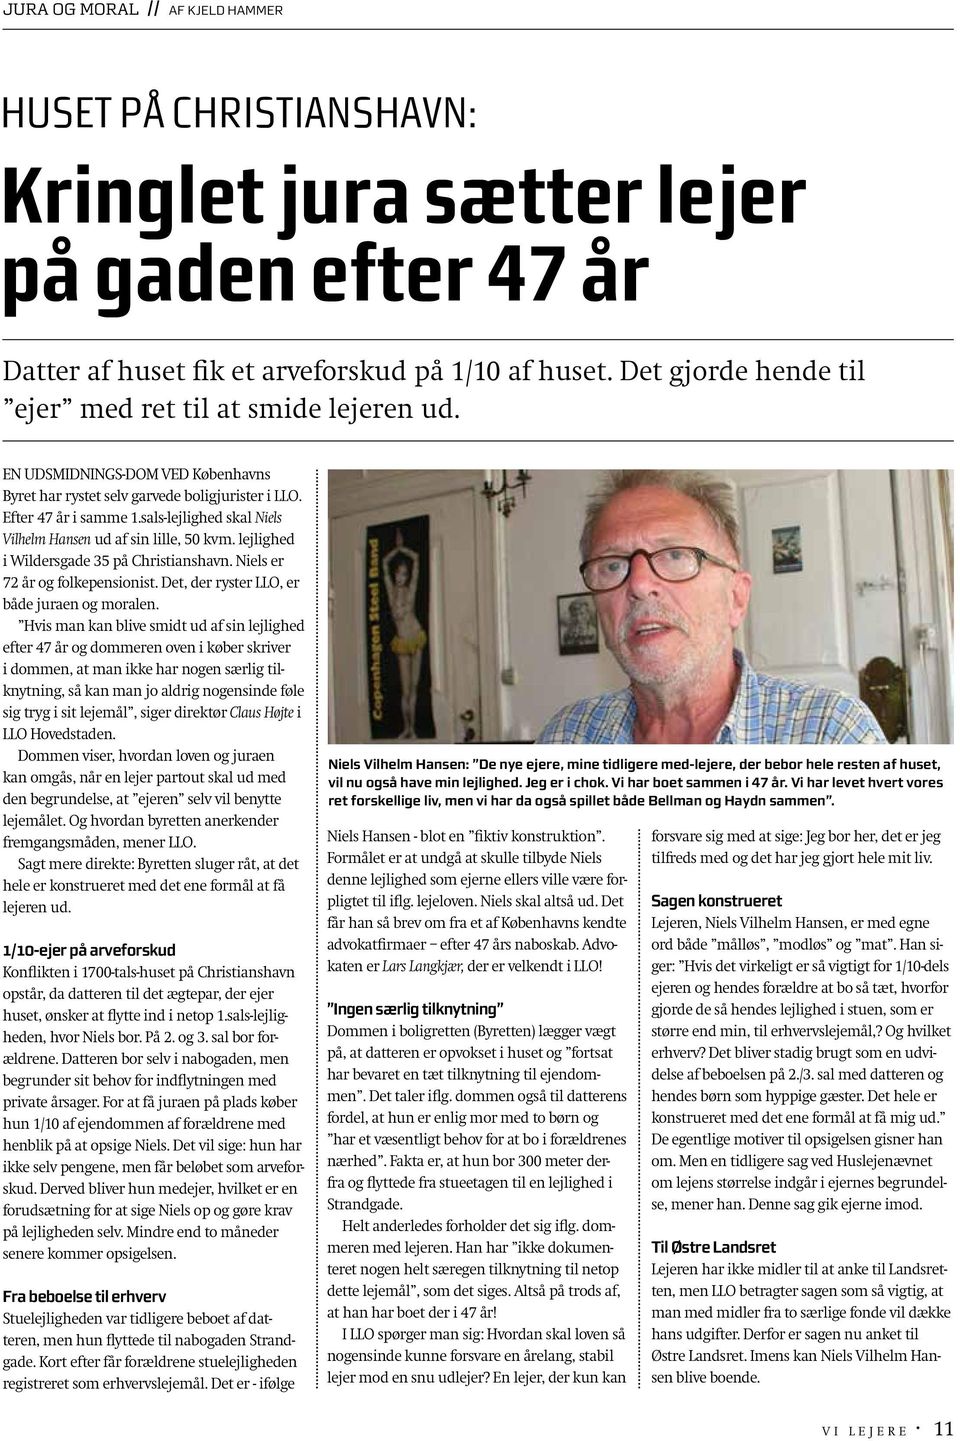 sals-lejlighed skal Niels Vilhelm Hansen ud af sin lille, 50 kvm. lejlighed i Wildersgade 35 på Christianshavn. Niels er 72 år og folkepensionist. Det, der ryster LLO, er både juraen og moralen.